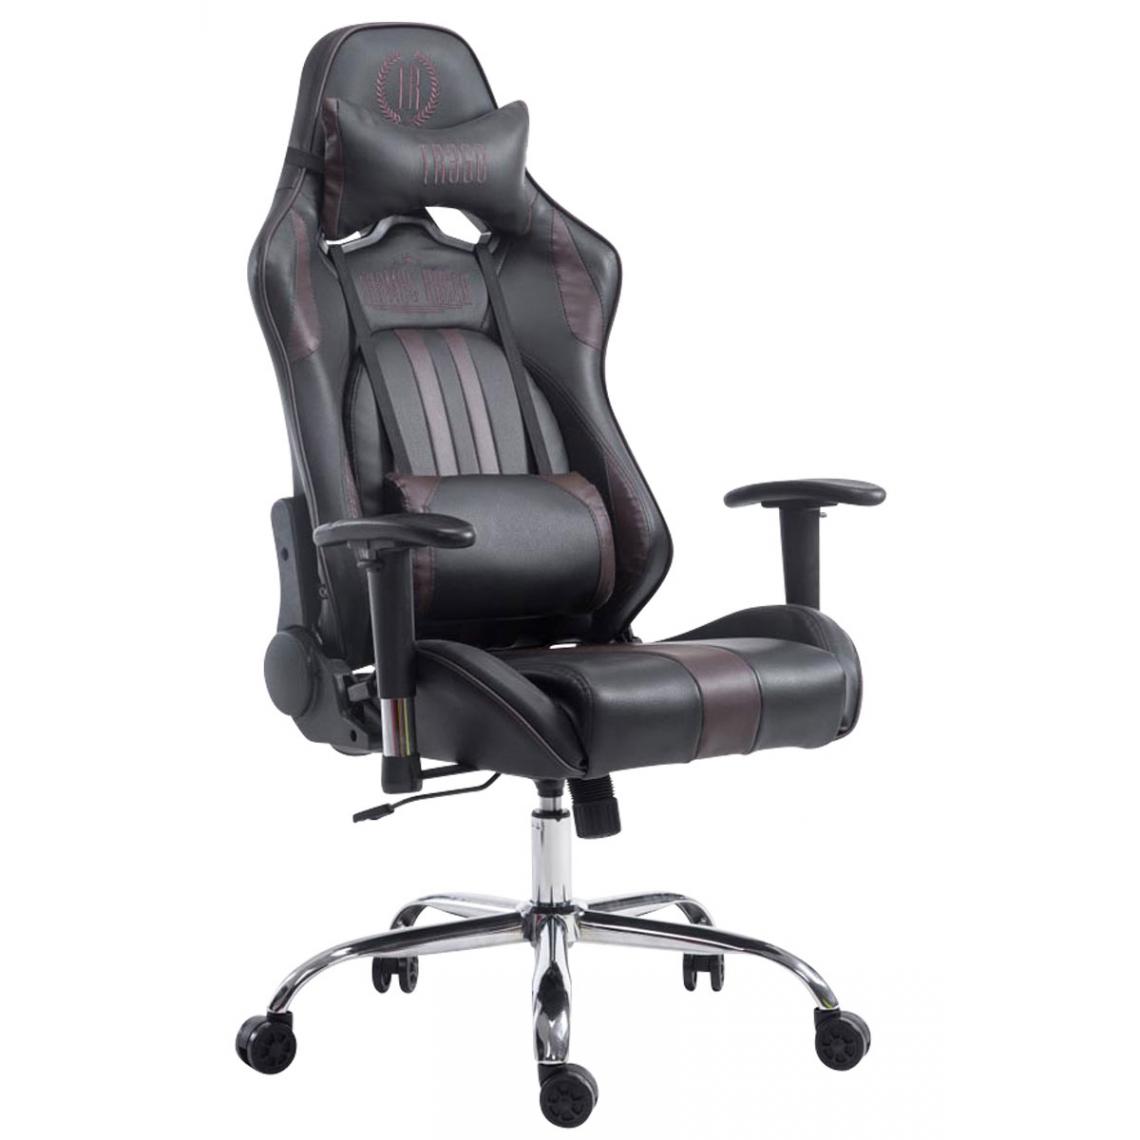 Icaverne - Splendide Chaise de bureau serie Luanda Limit V2 cuir synthétique sans repose-pieds couleur noir marron - Chaises